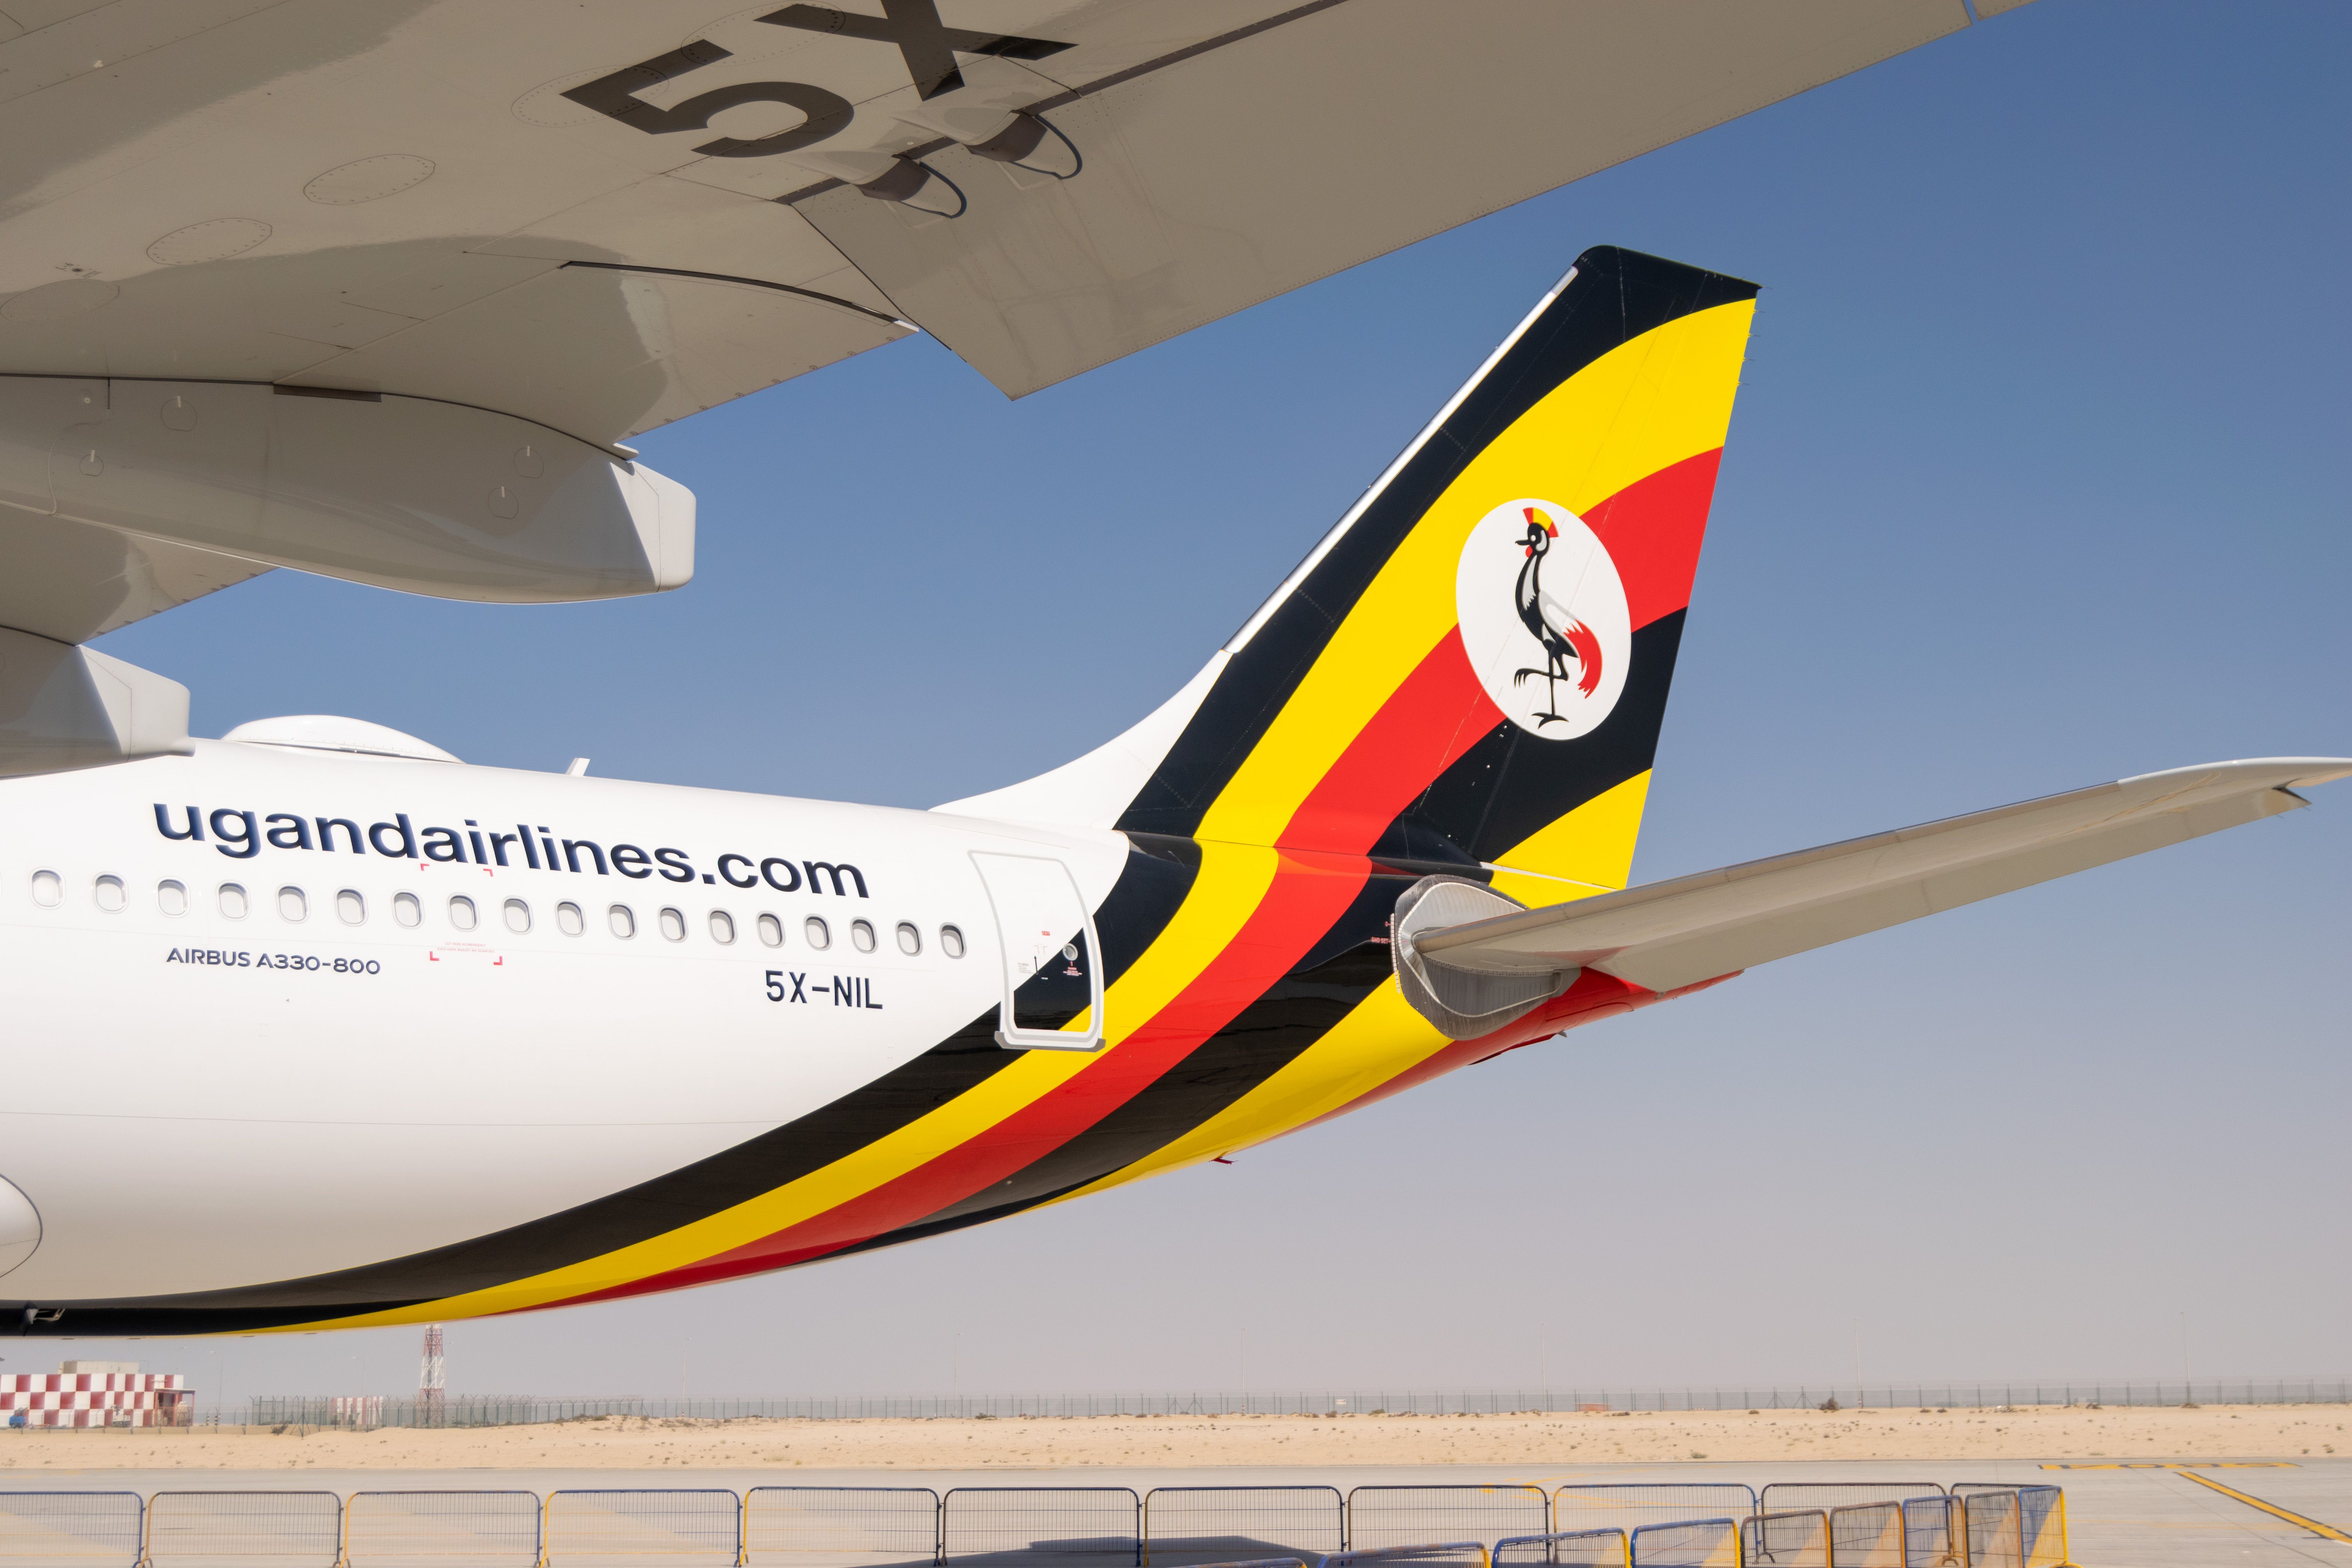 Uganda Airlines at airport